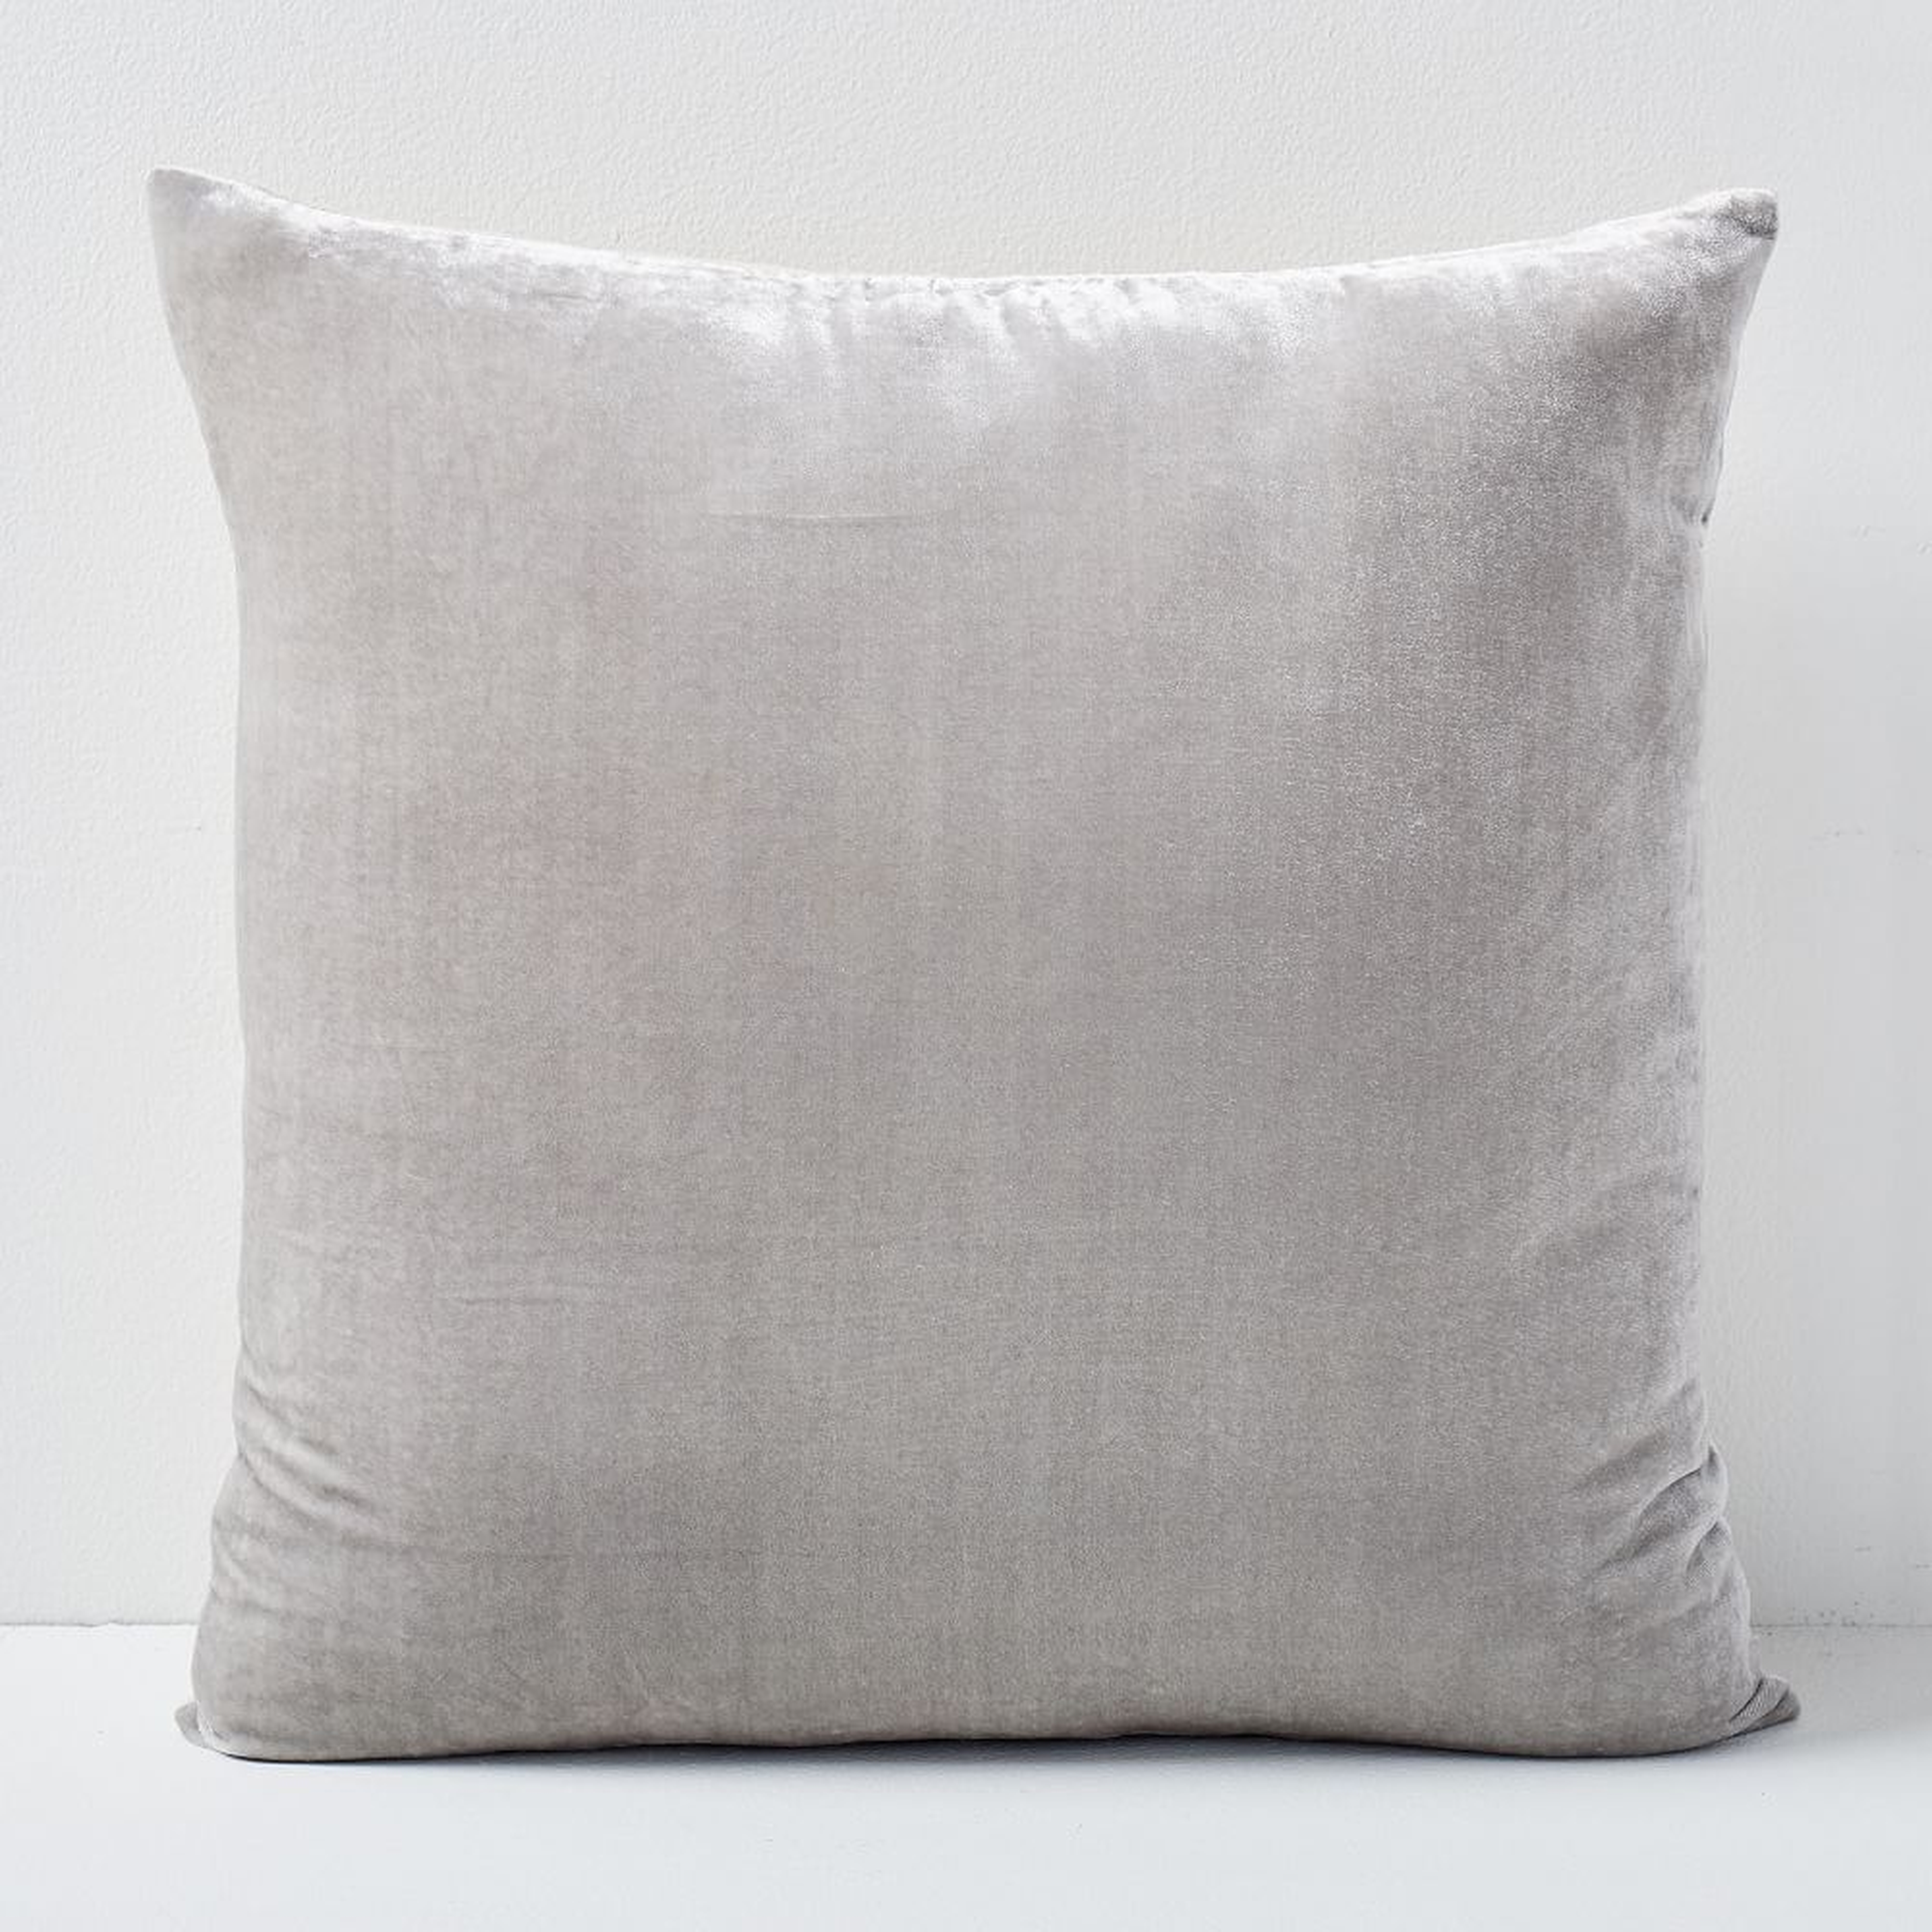 Lush Velvet Pillow Cover, 24"x24", Pearl Gray - West Elm